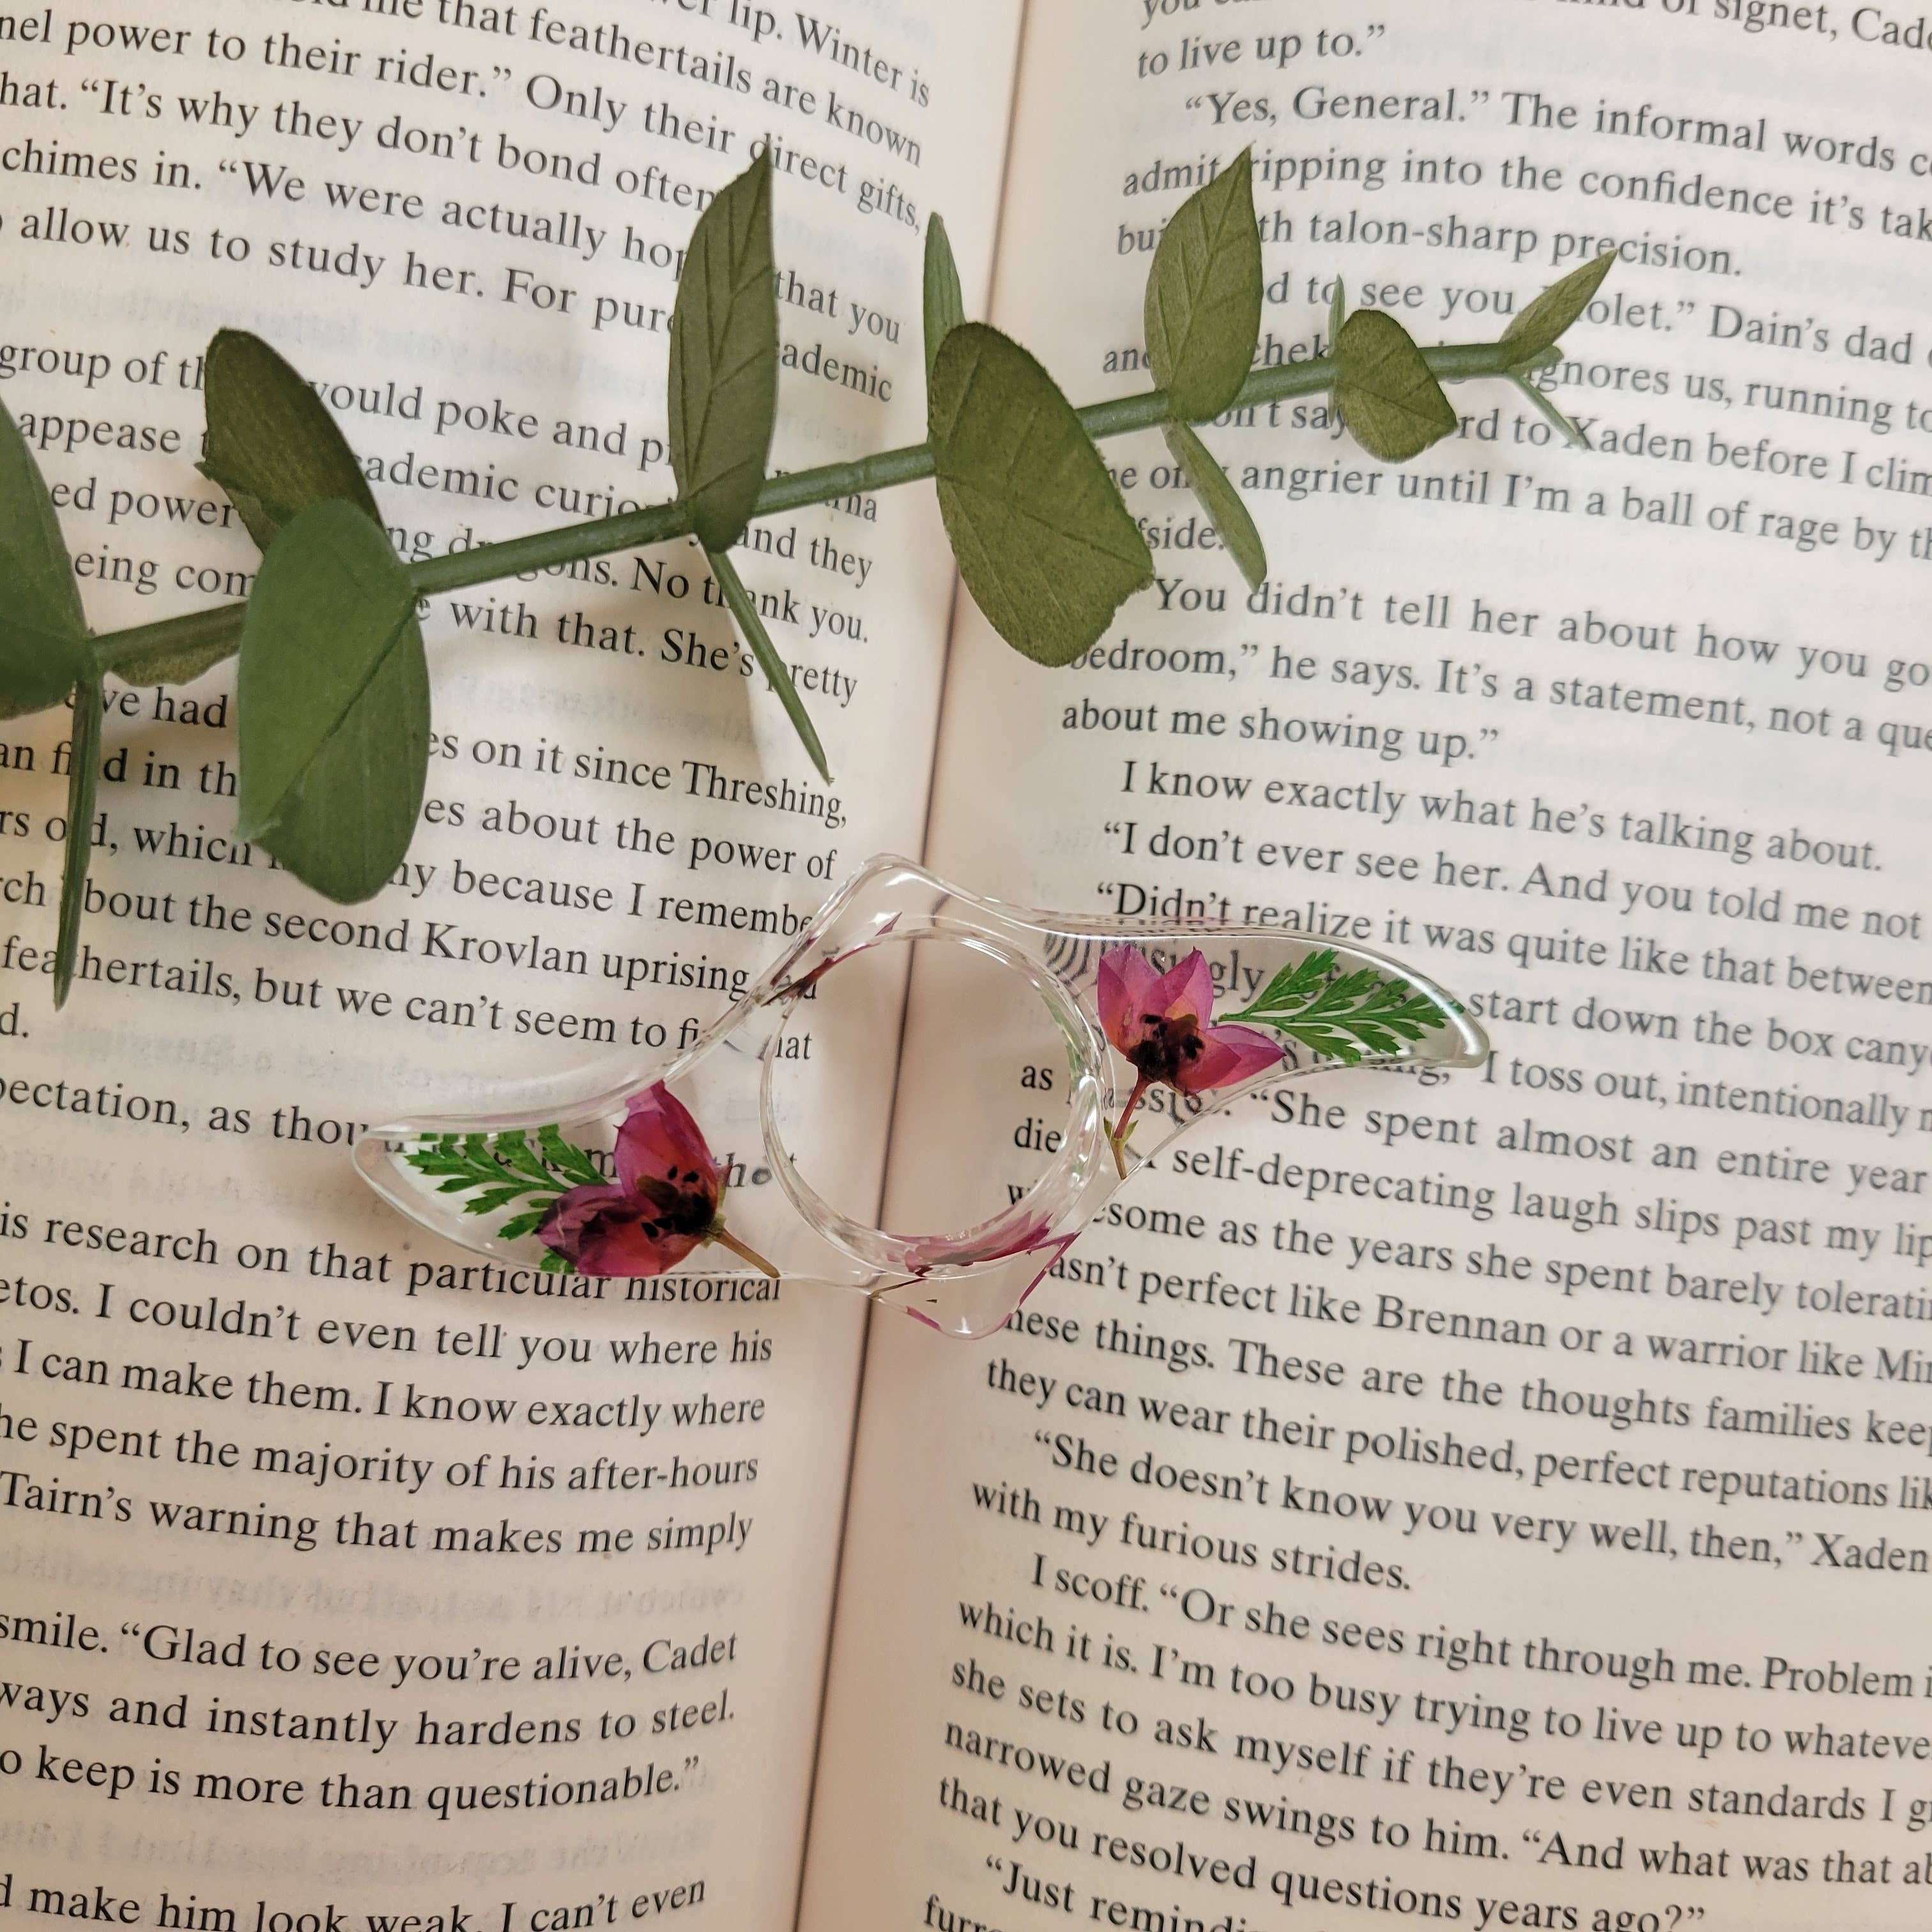 Floral Book Holder/Page Spreader